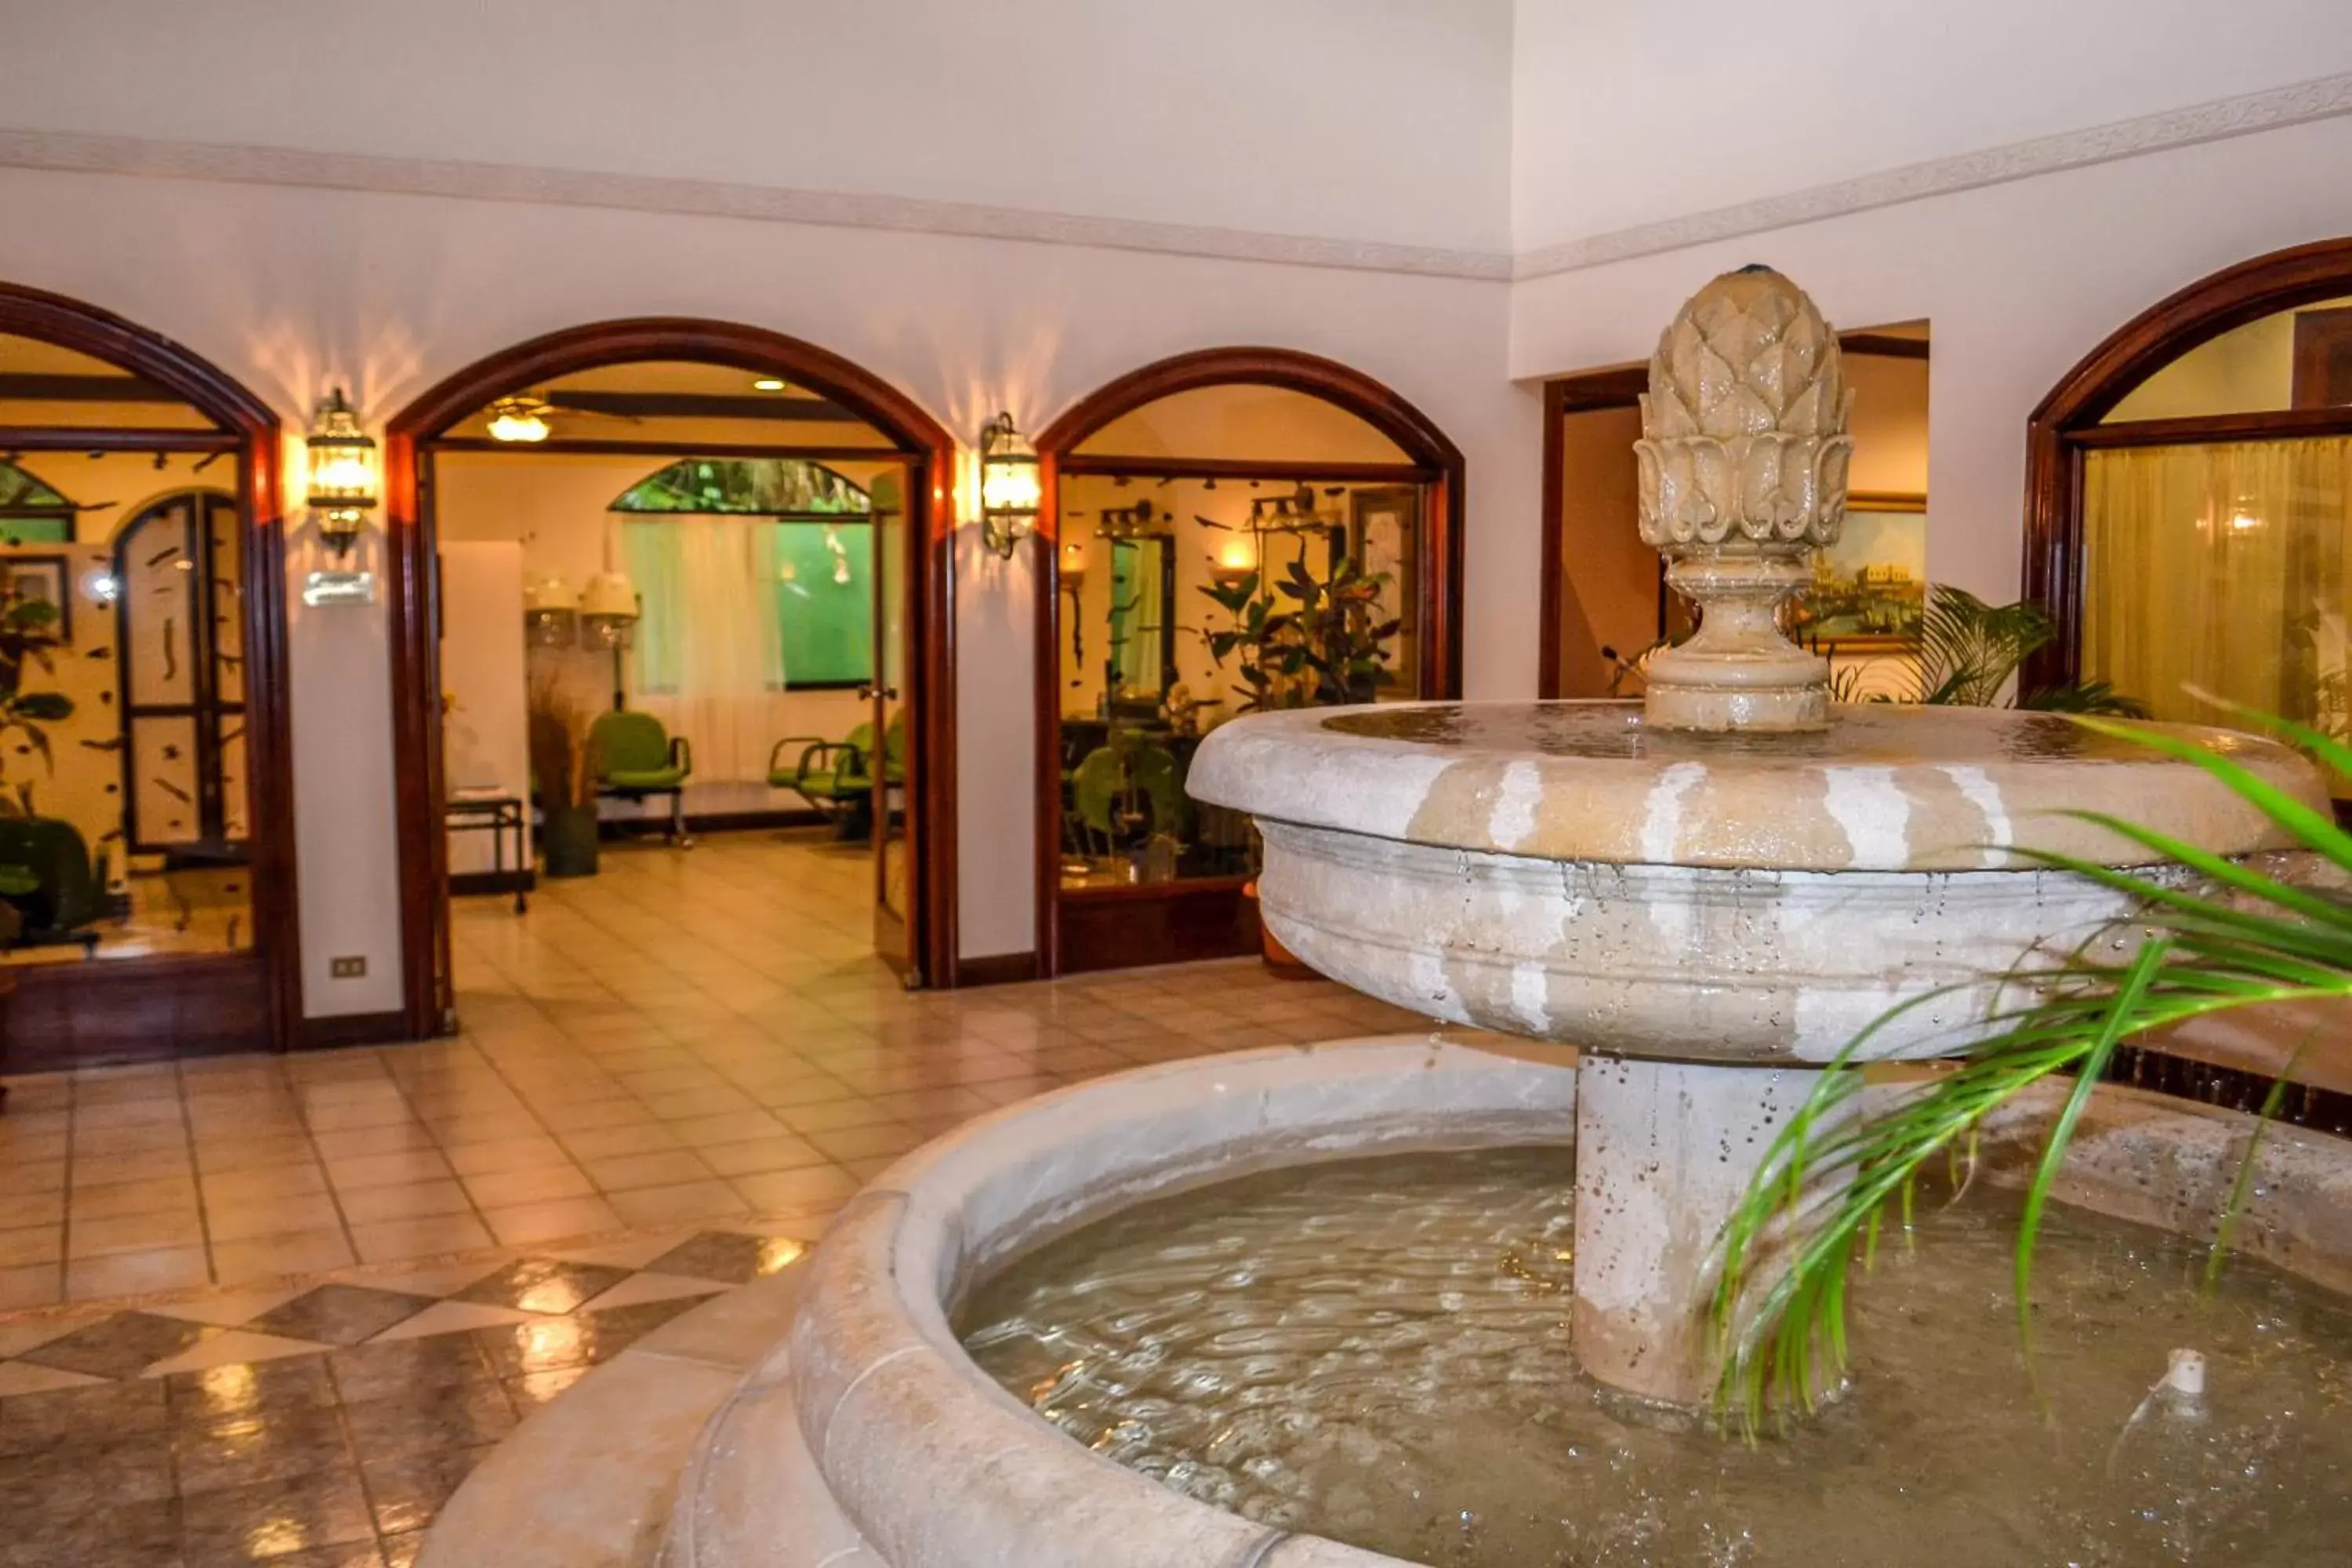 Area and facilities, Bathroom in El Tucano Resort & Thermal Spa